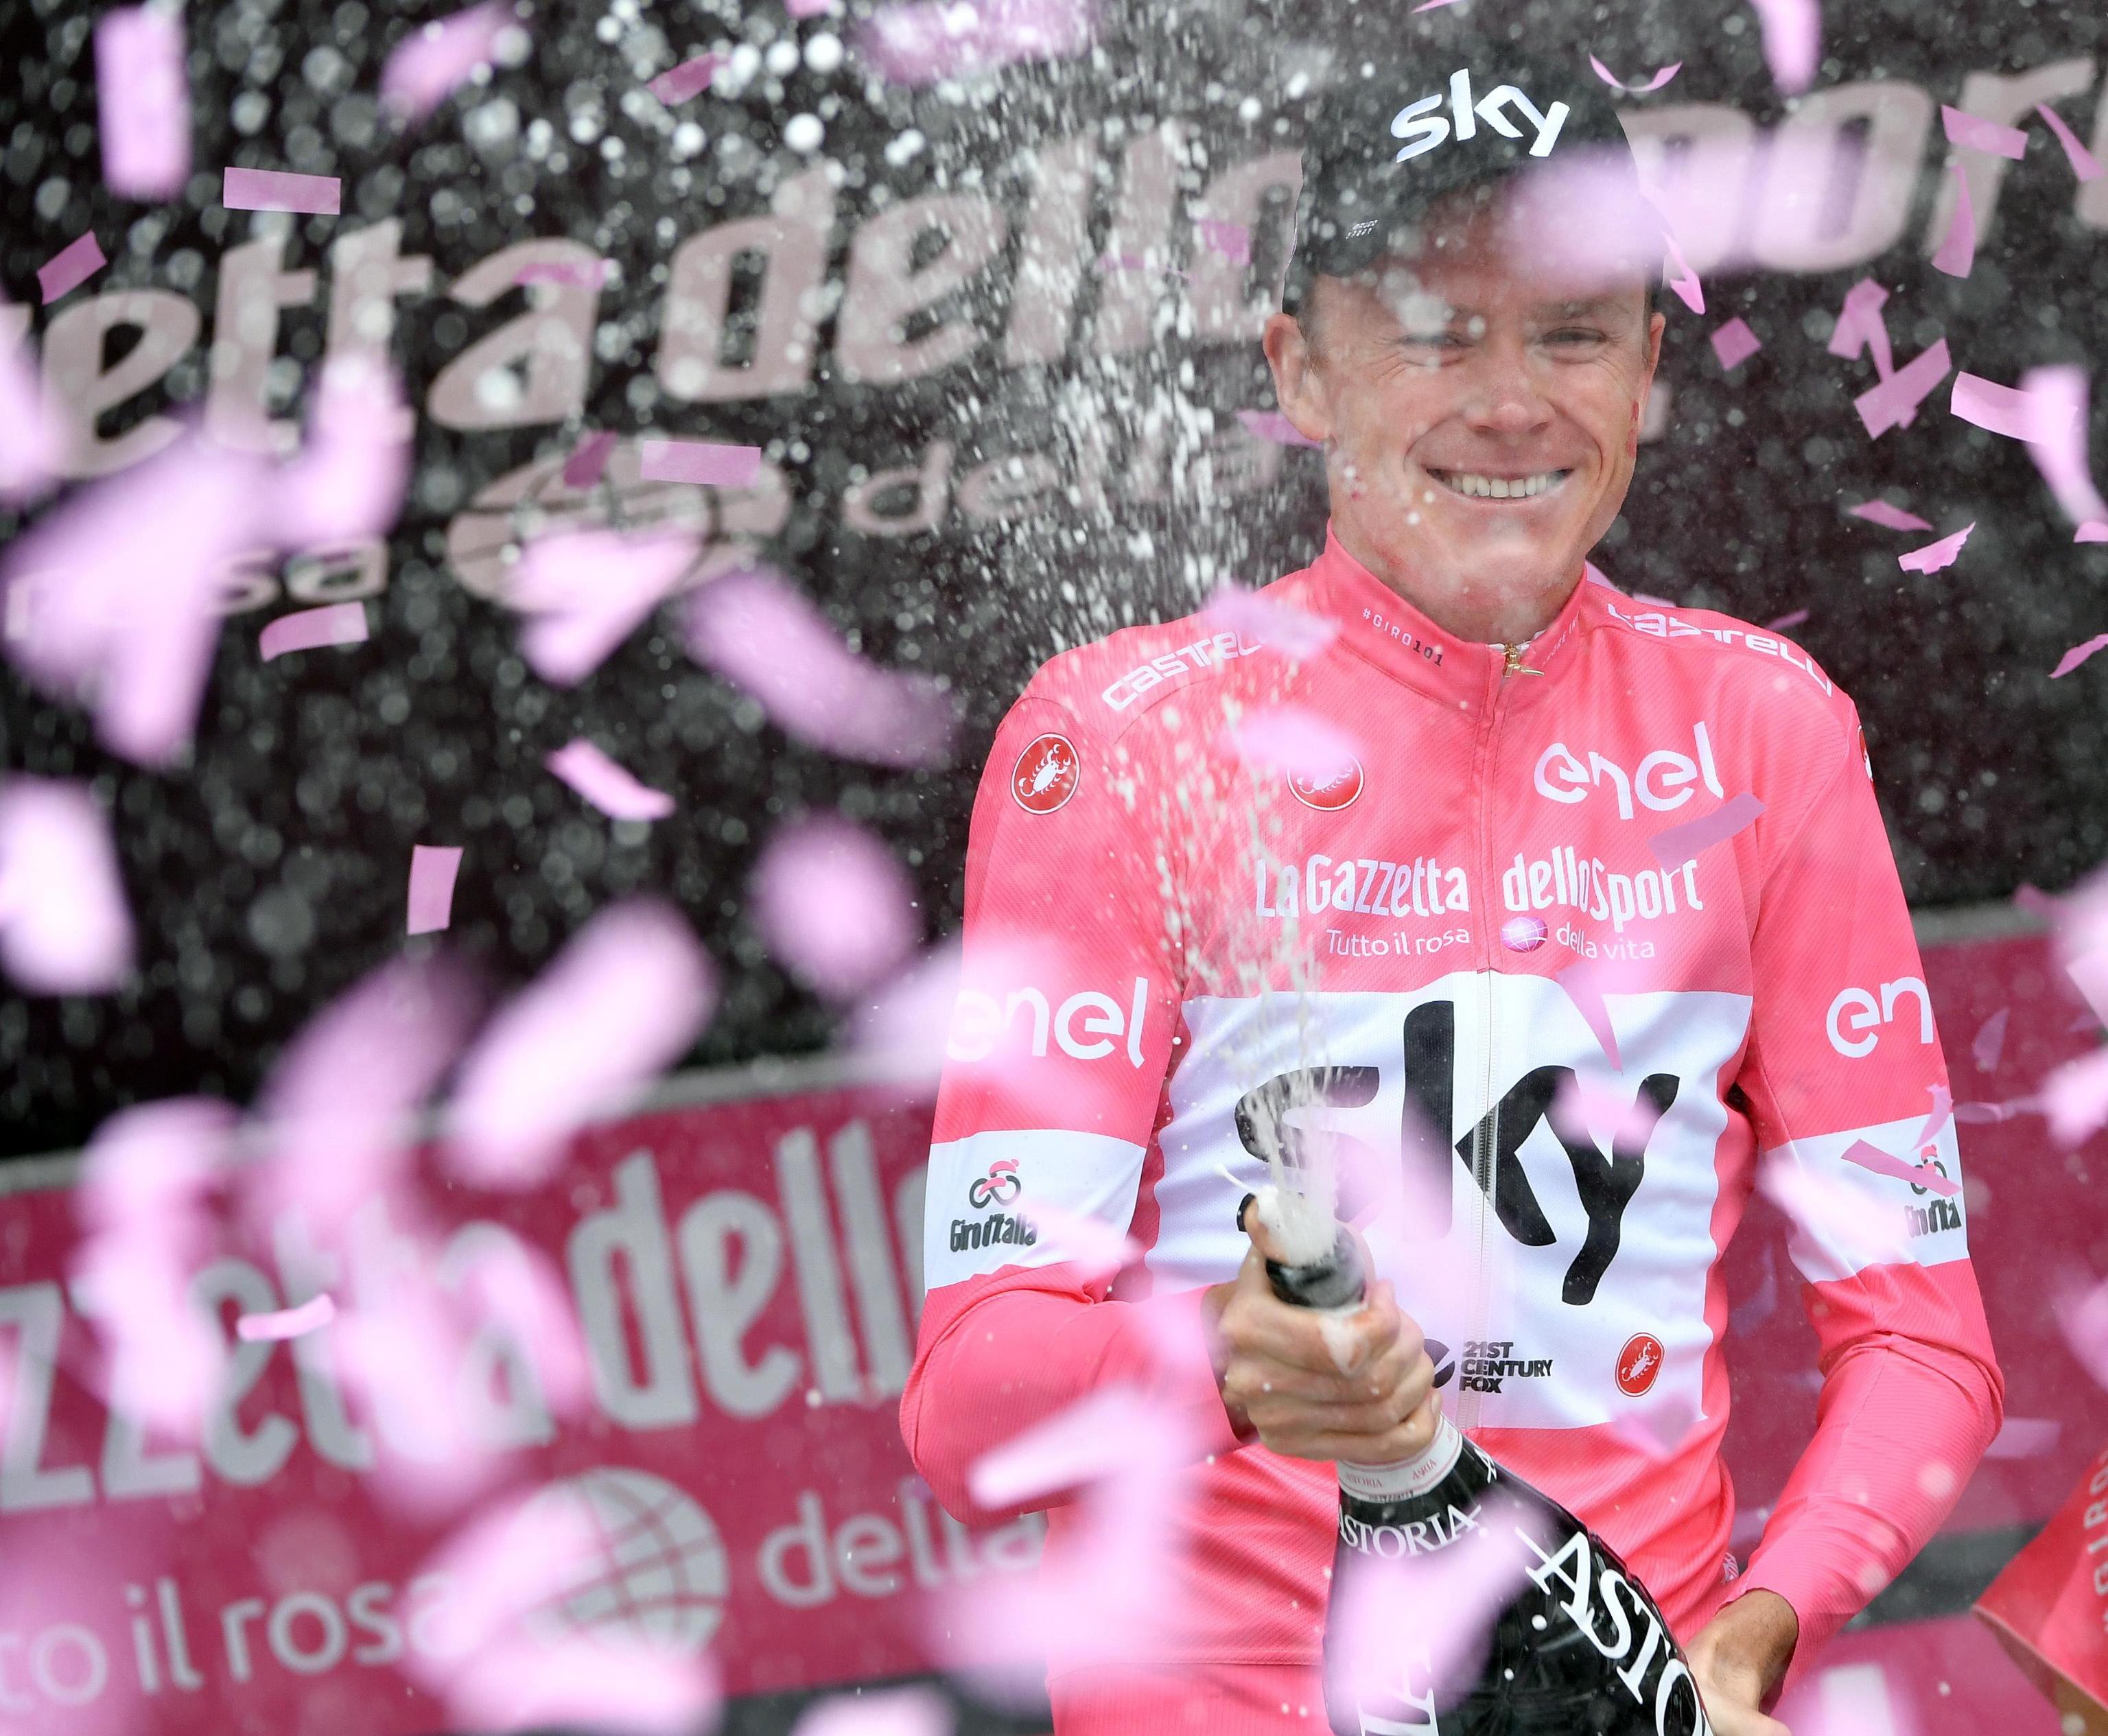 Chris Froome vence o Giro e reedita proeza dos lendários Merckx e Hinault